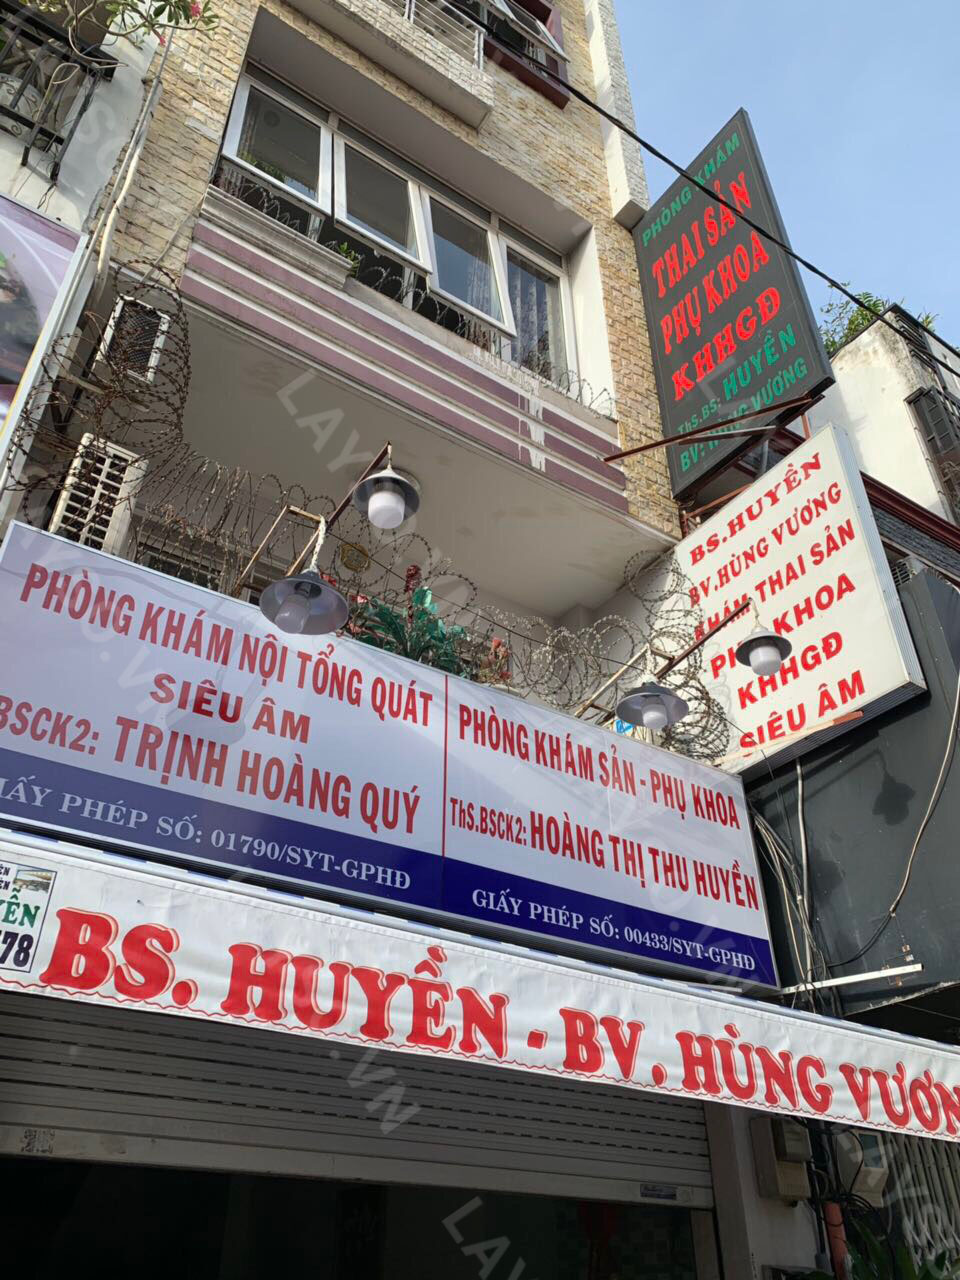 Phòng khám Sản phụ khoa & Siêu âm - ThS. BS.CKII Hoàng Thị Thu Huyền  